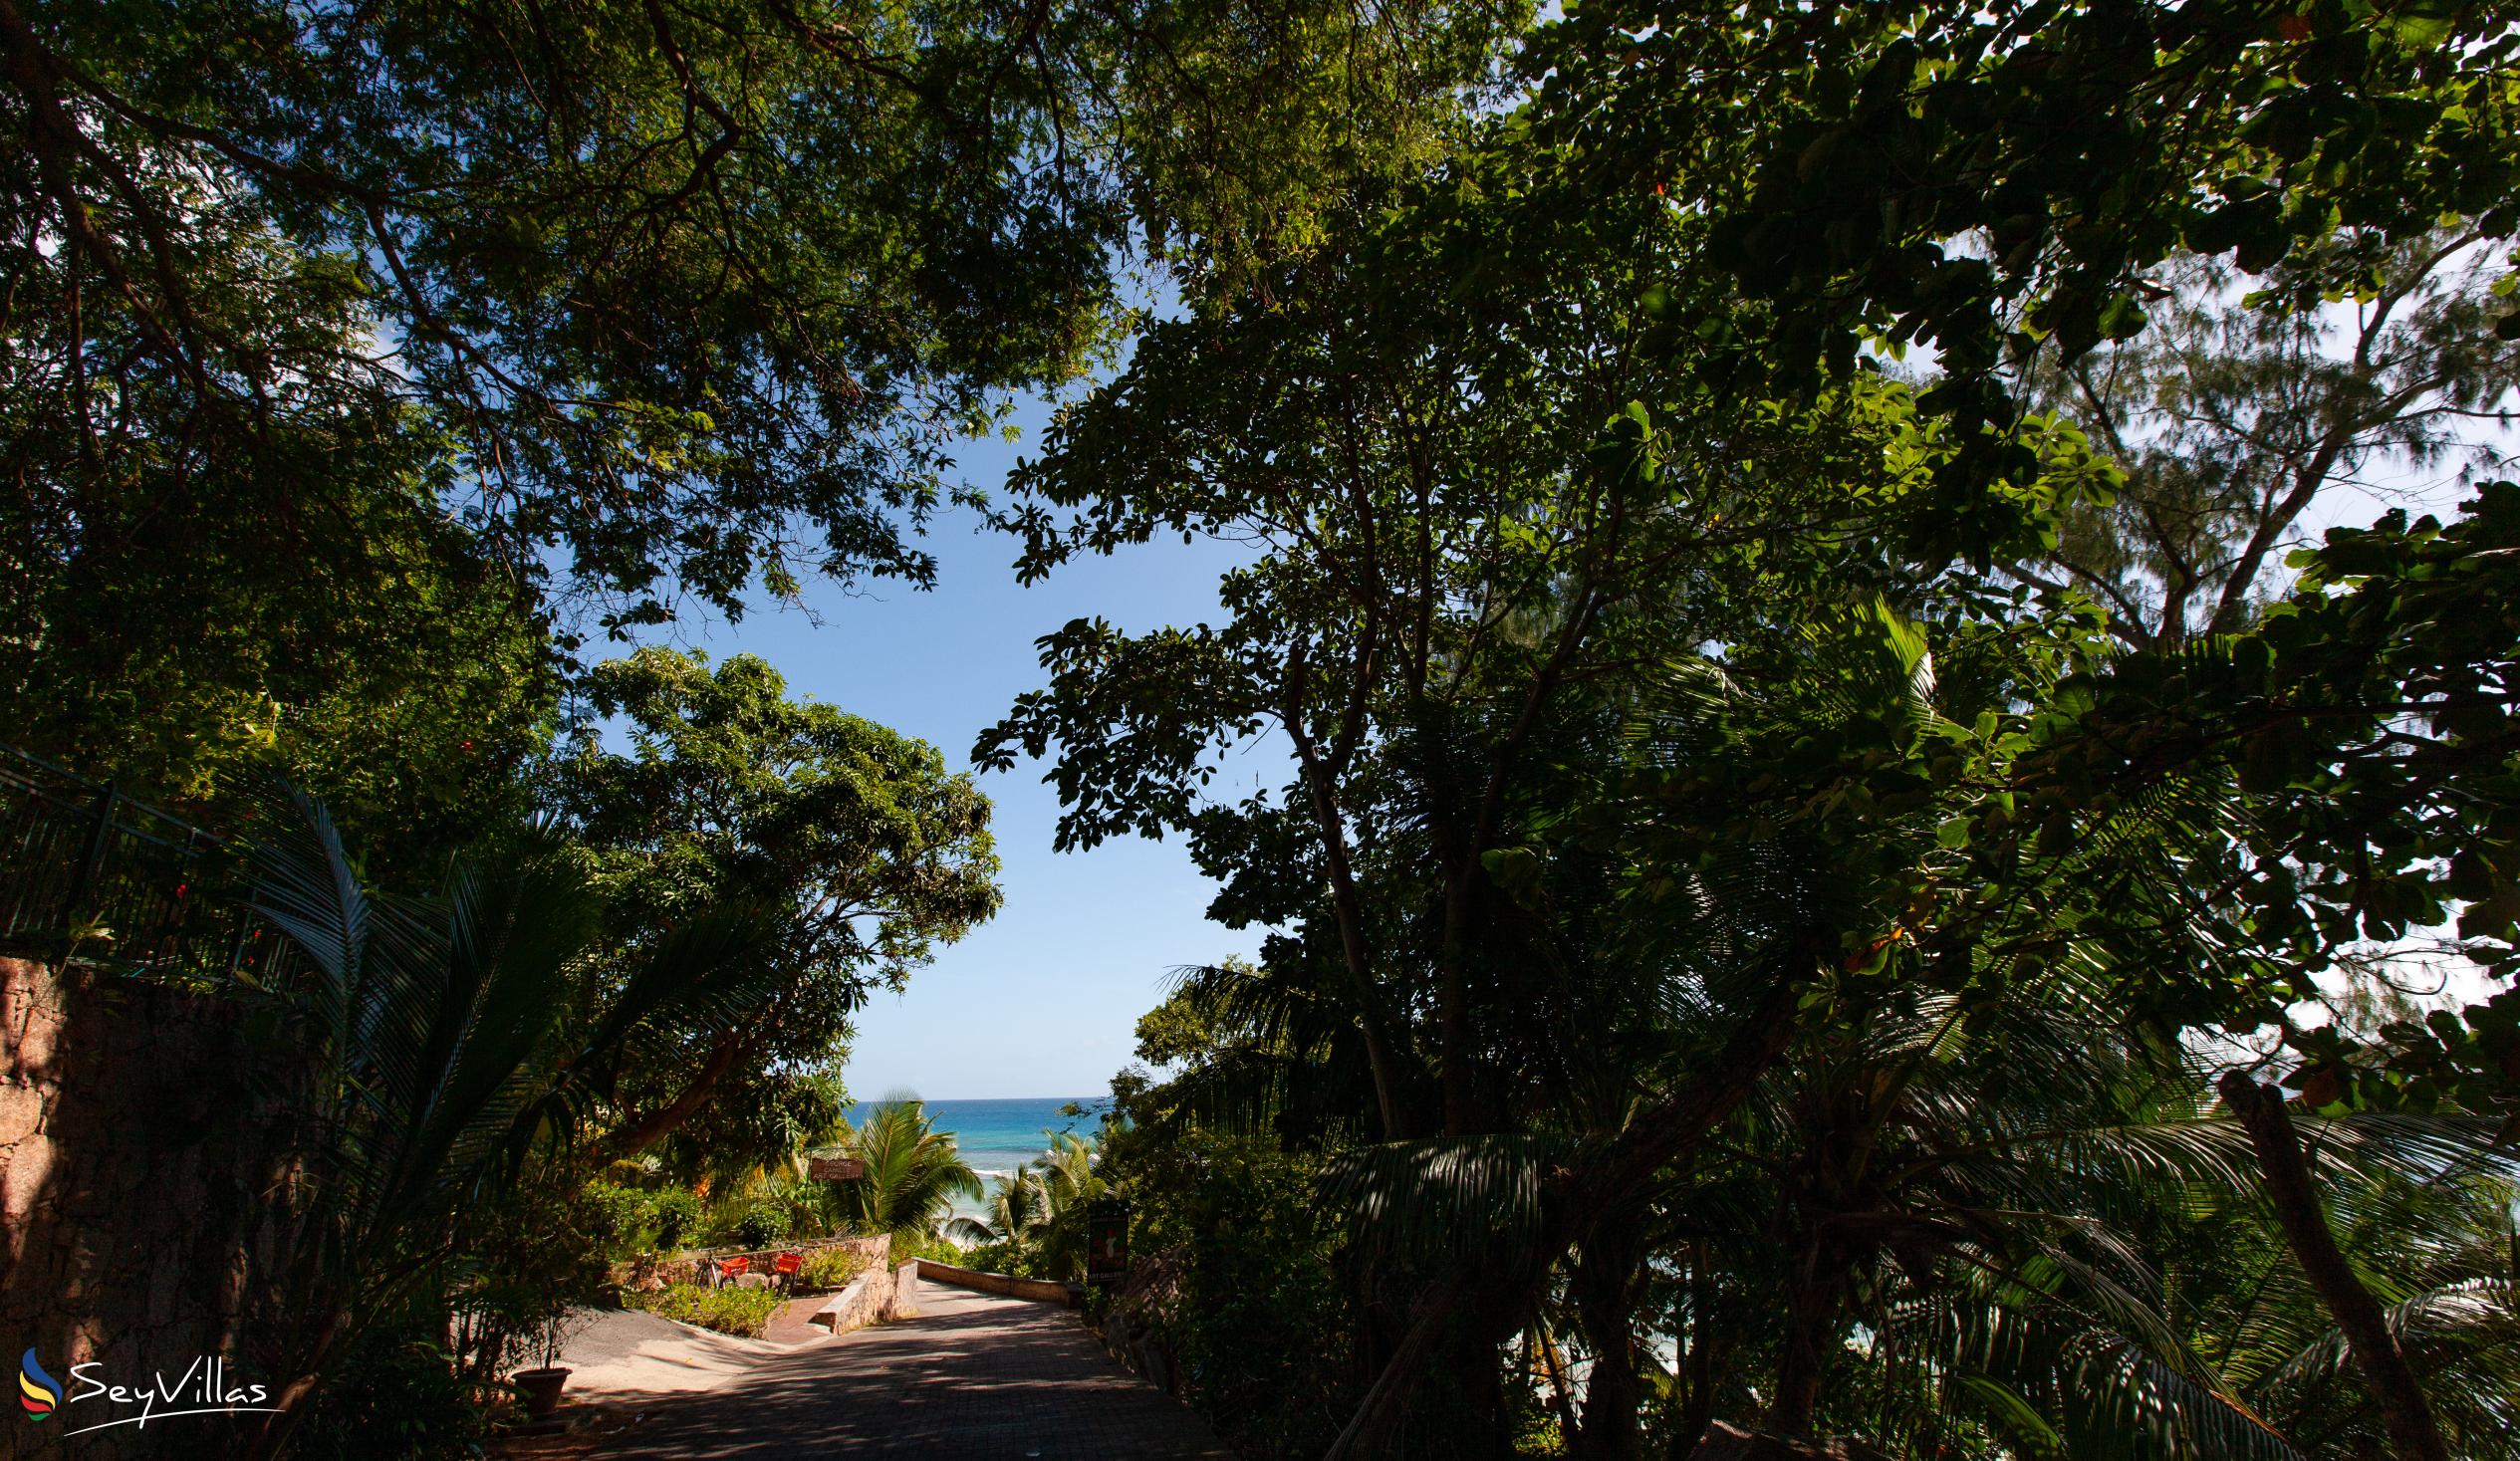 Foto 27: Lakaz An Bwa - Location - La Digue (Seychelles)